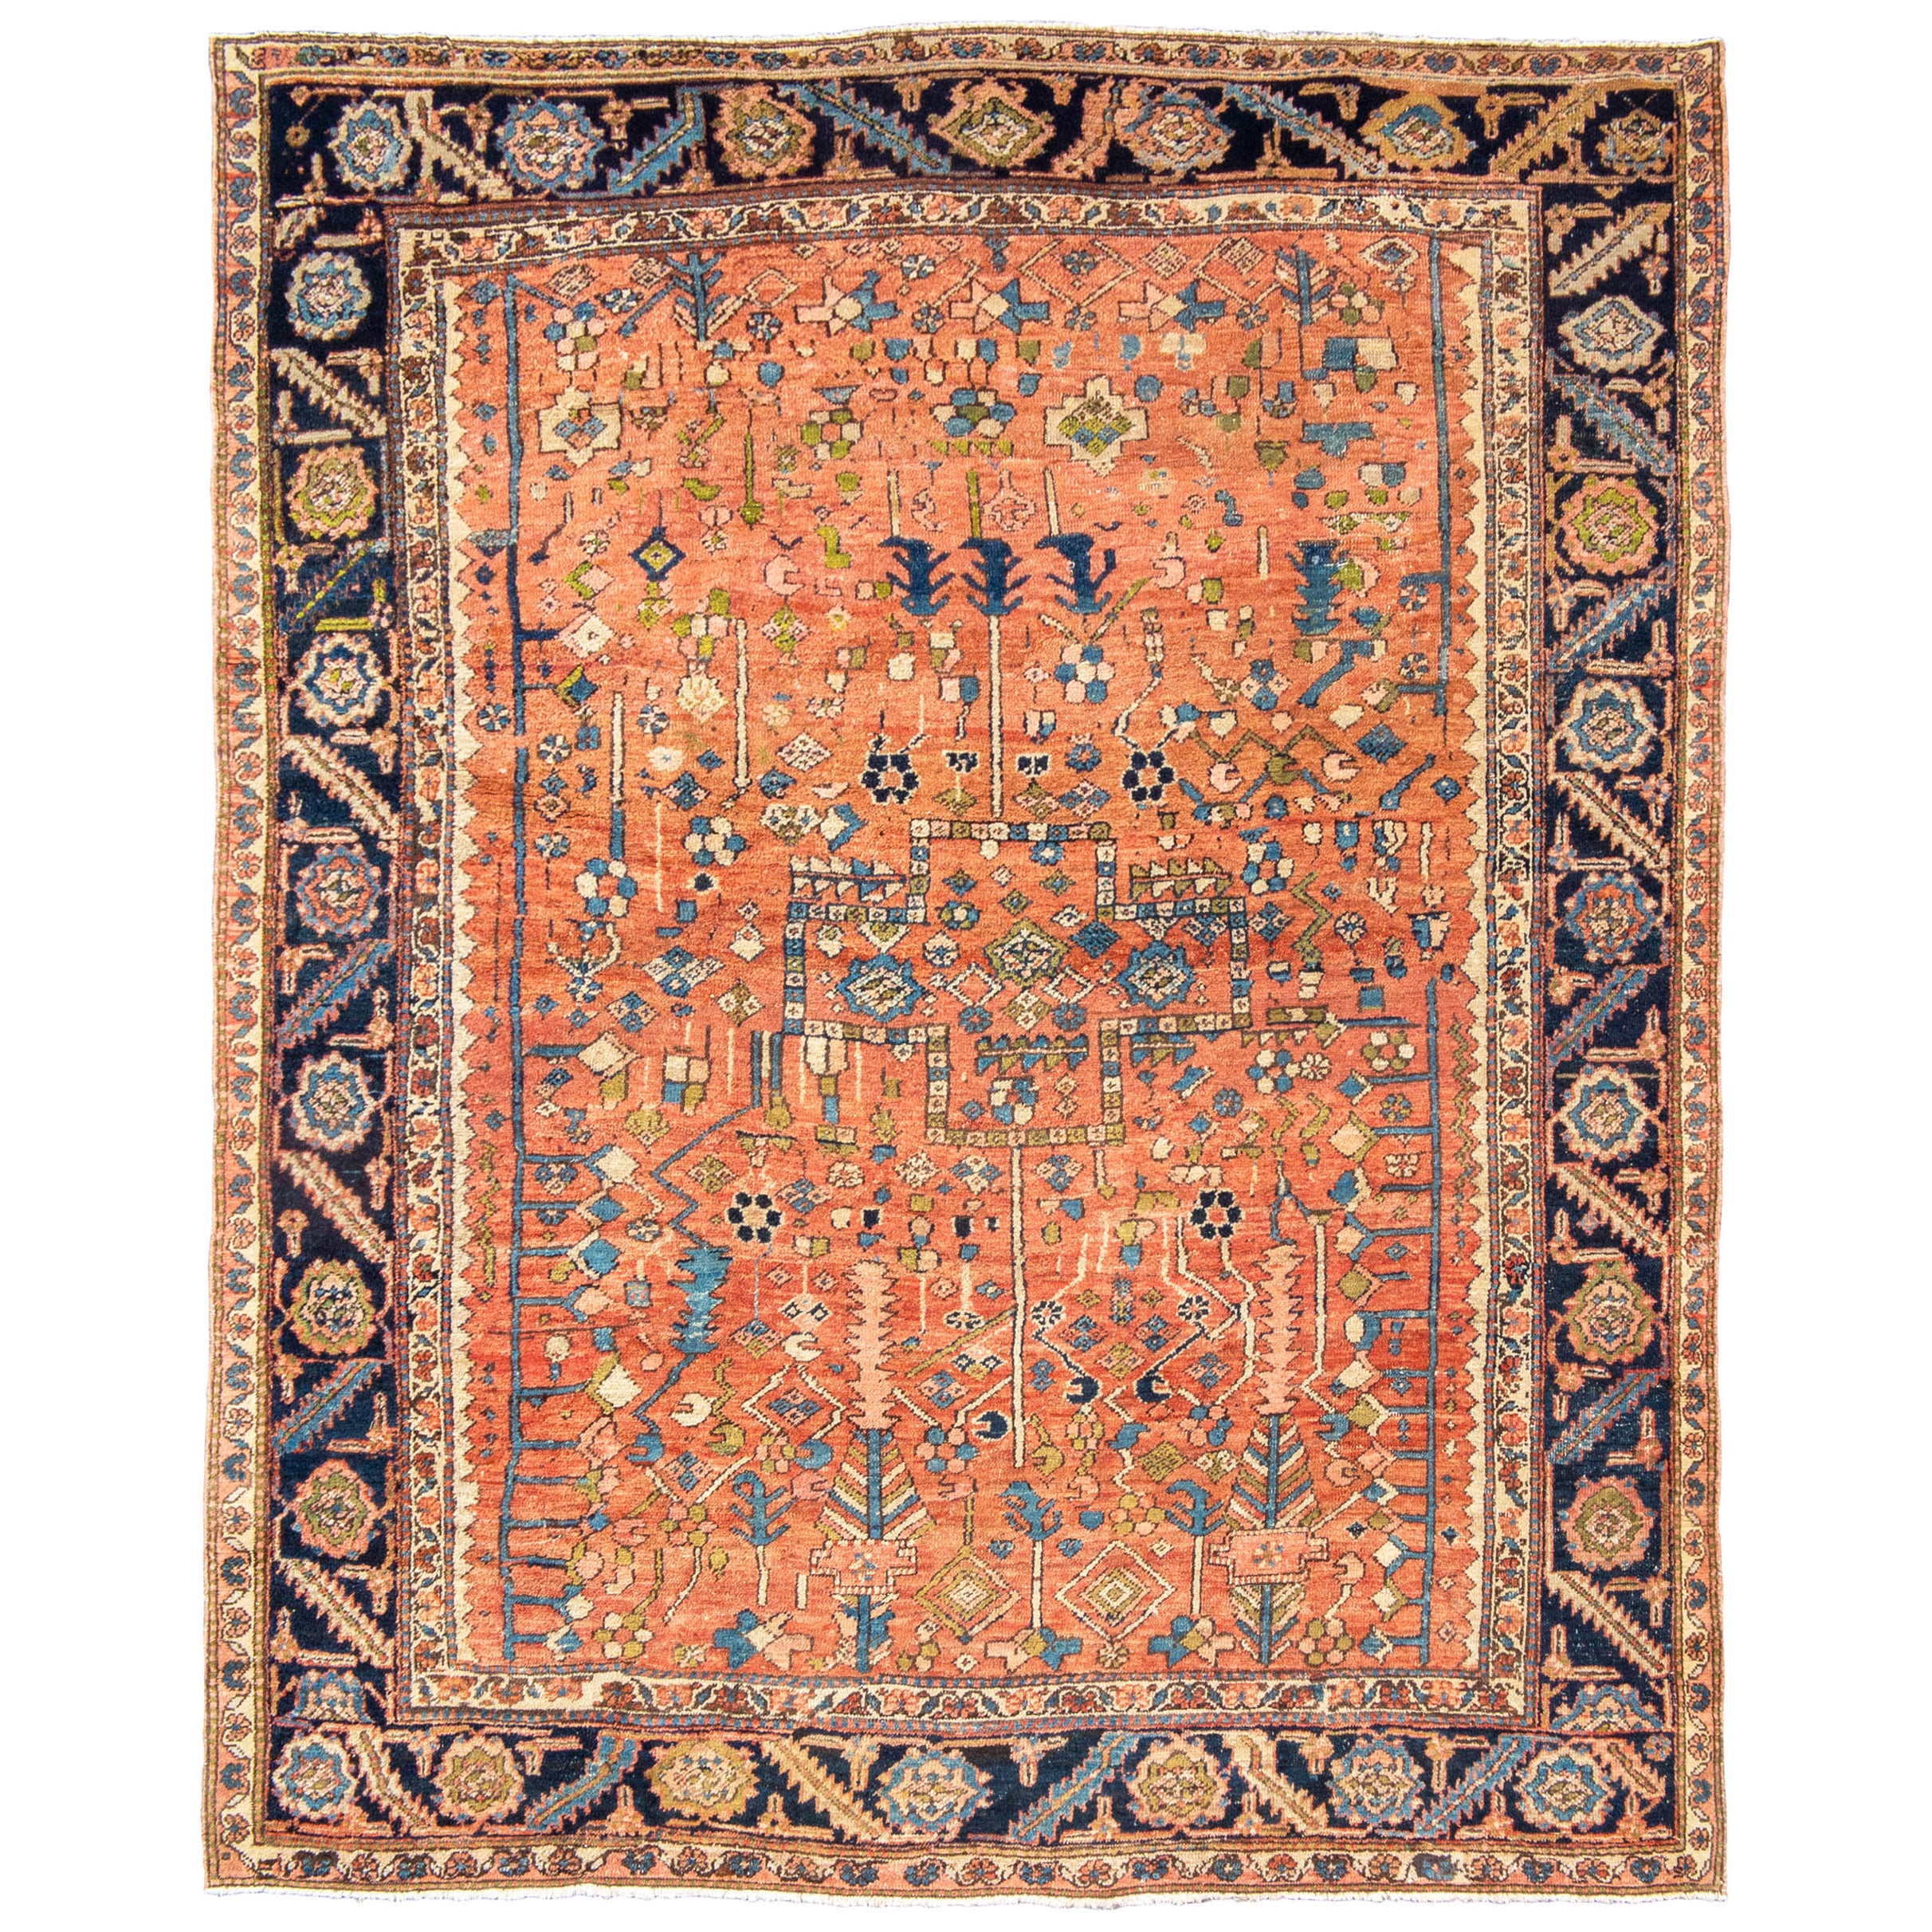 Antique Persian Bakhshaish Carpet, c. 1900